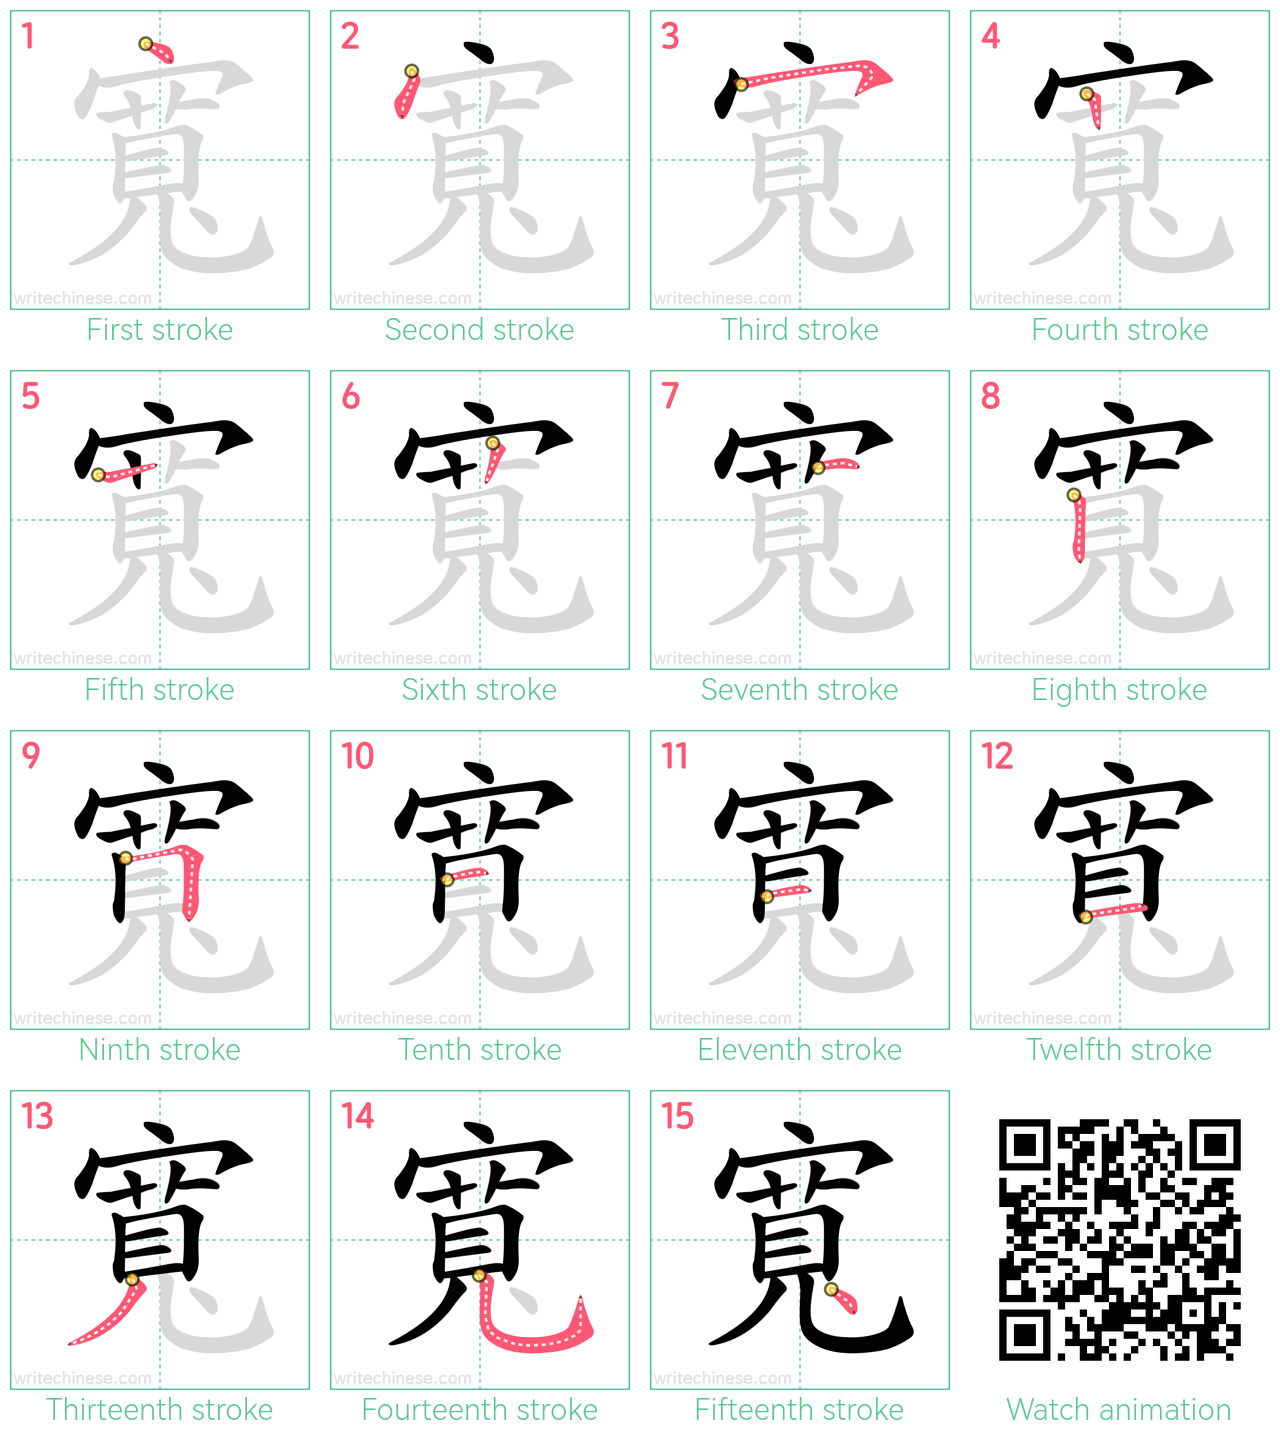 寬 step-by-step stroke order diagrams